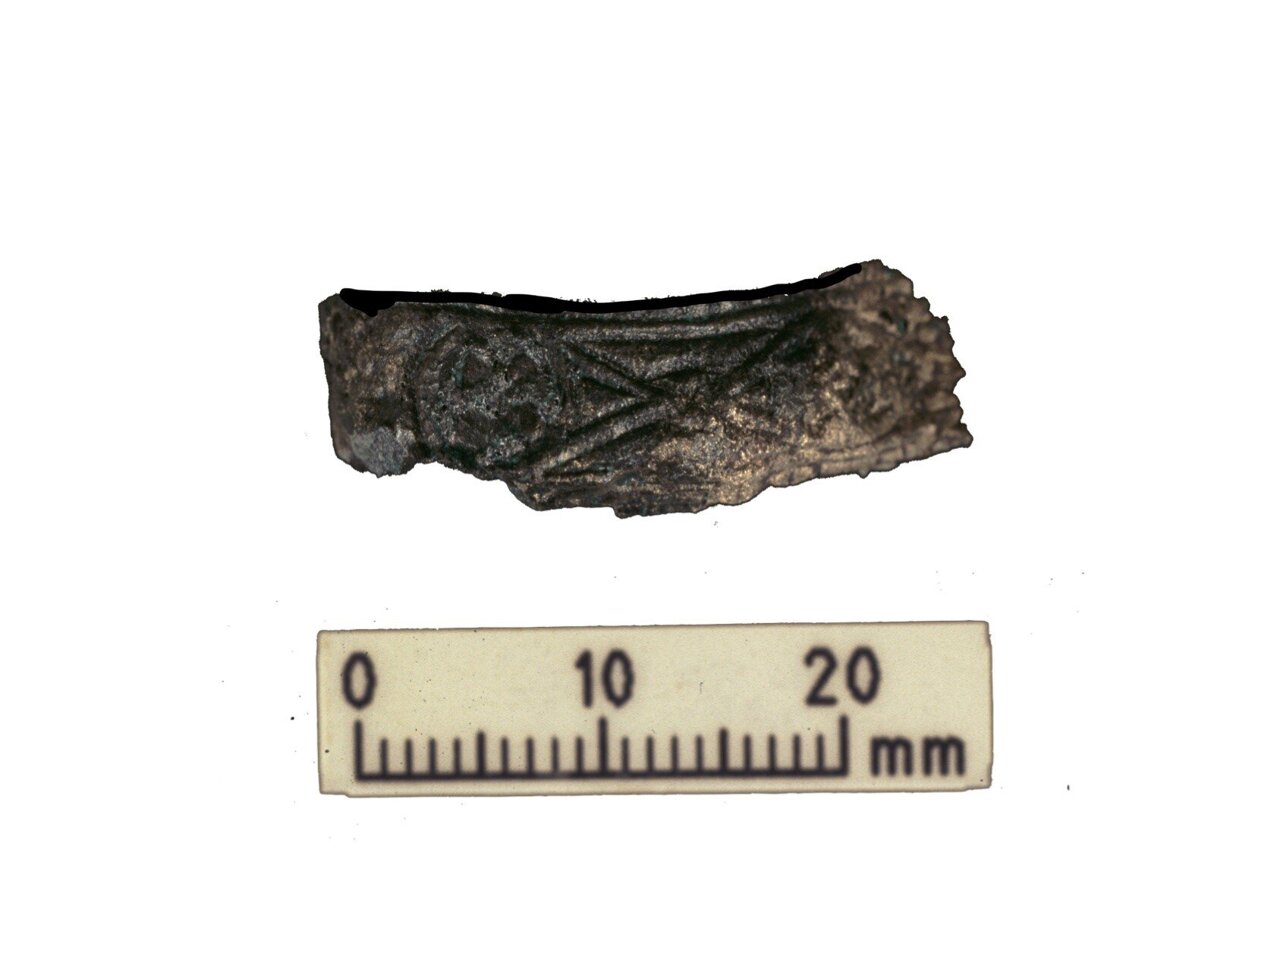 Gedecoreerde gevestbeschermer van het Viking-krijgerszwaard. Het zwaard werd gevonden in hetzelfde graf als de menselijke en dierlijke resten die tijdens het laatste onderzoek zijn geanalyseerd.